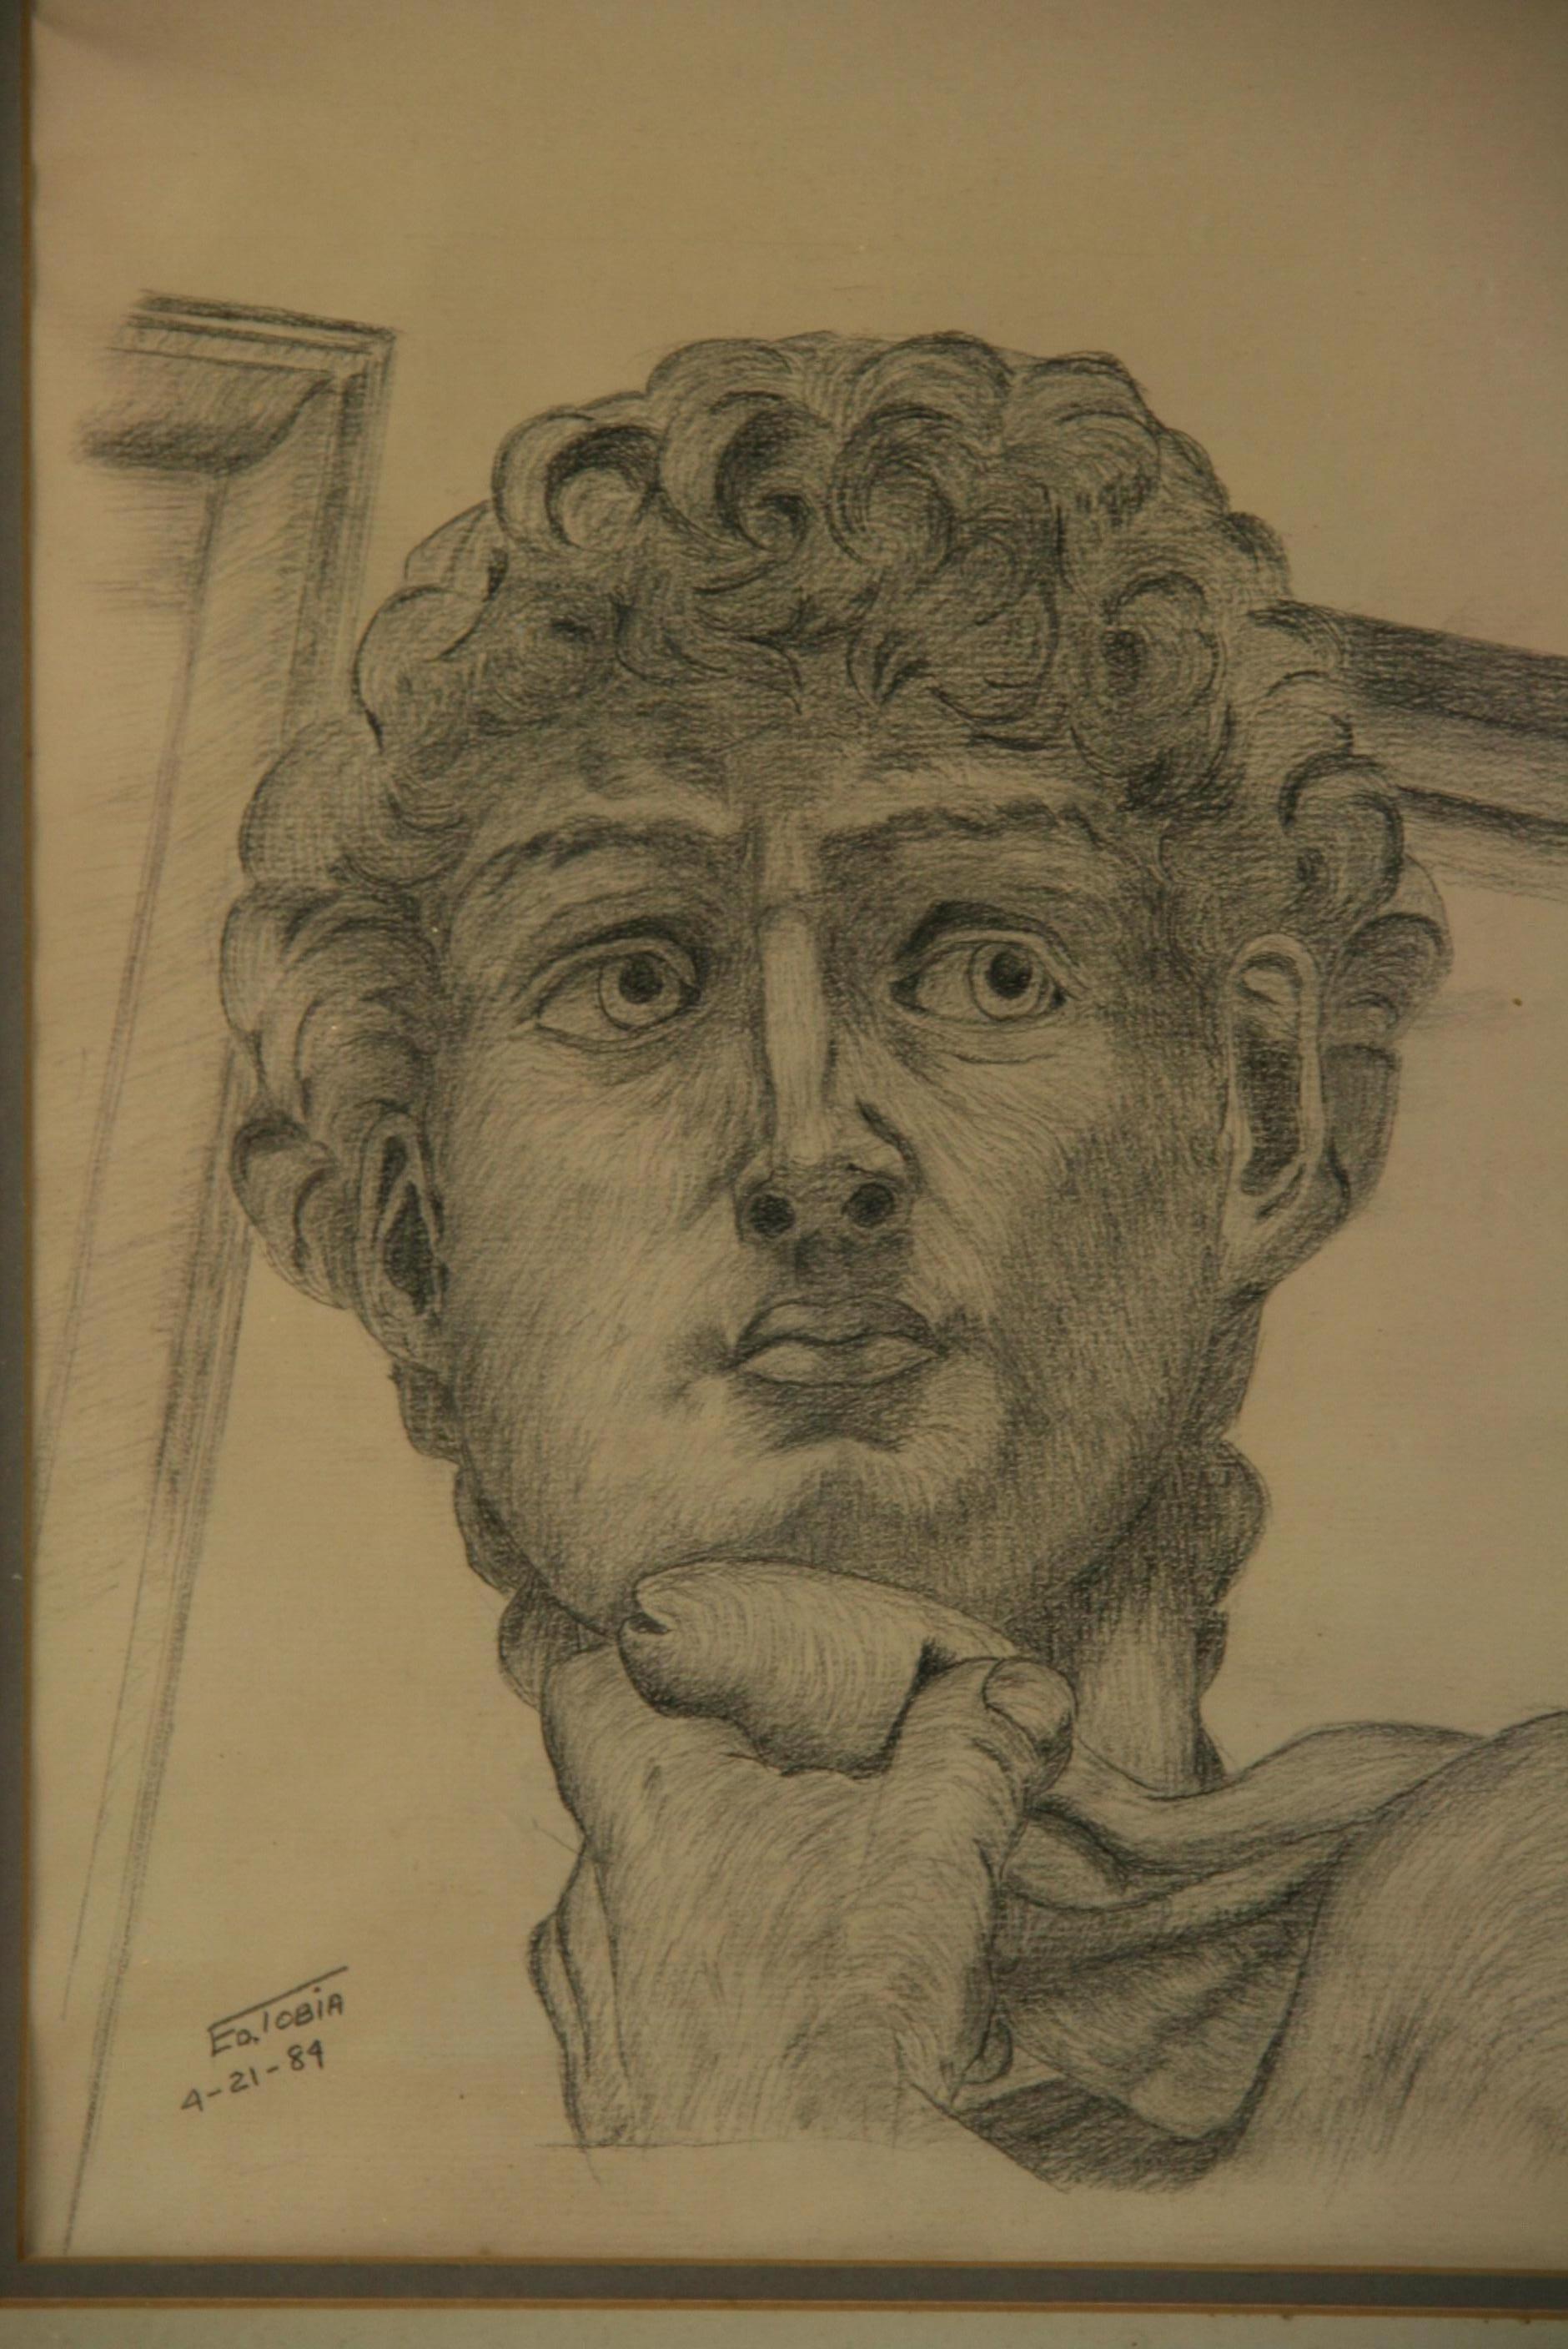 E.Tobia Figurative Art – Klassische italienische Holzkohle-Zeichnung von Michelangelos David im Vintage-Stil